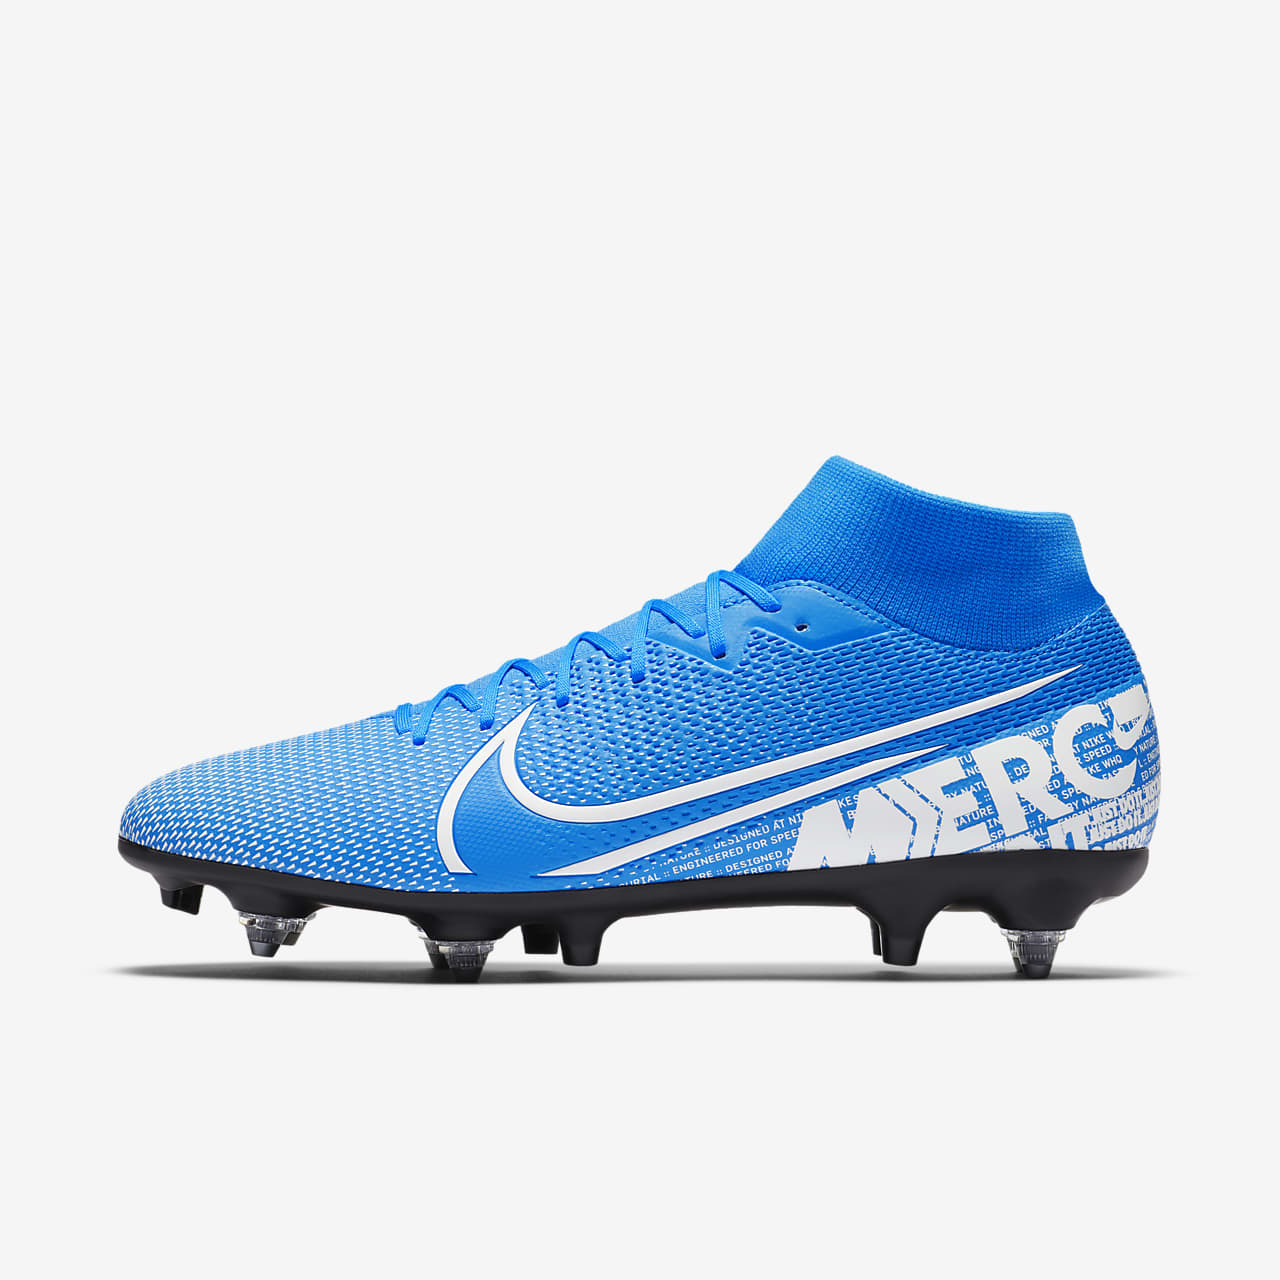 scarpe da calcio nike mercurial blu